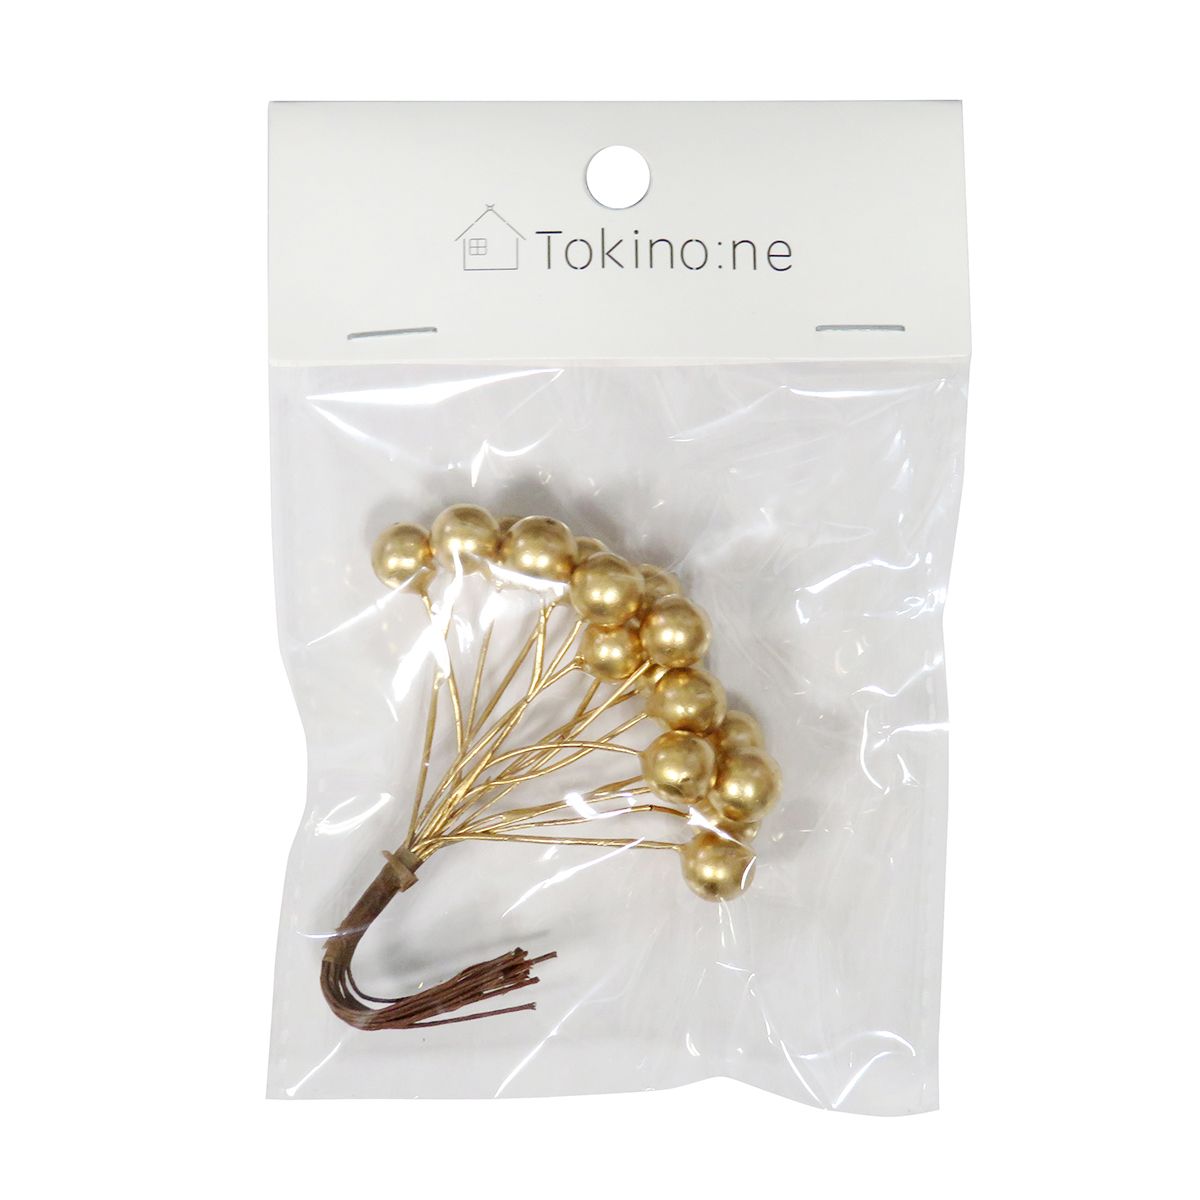 【在庫限り】Tokinone PB. デコレーションパーツ/ボールピック  054851